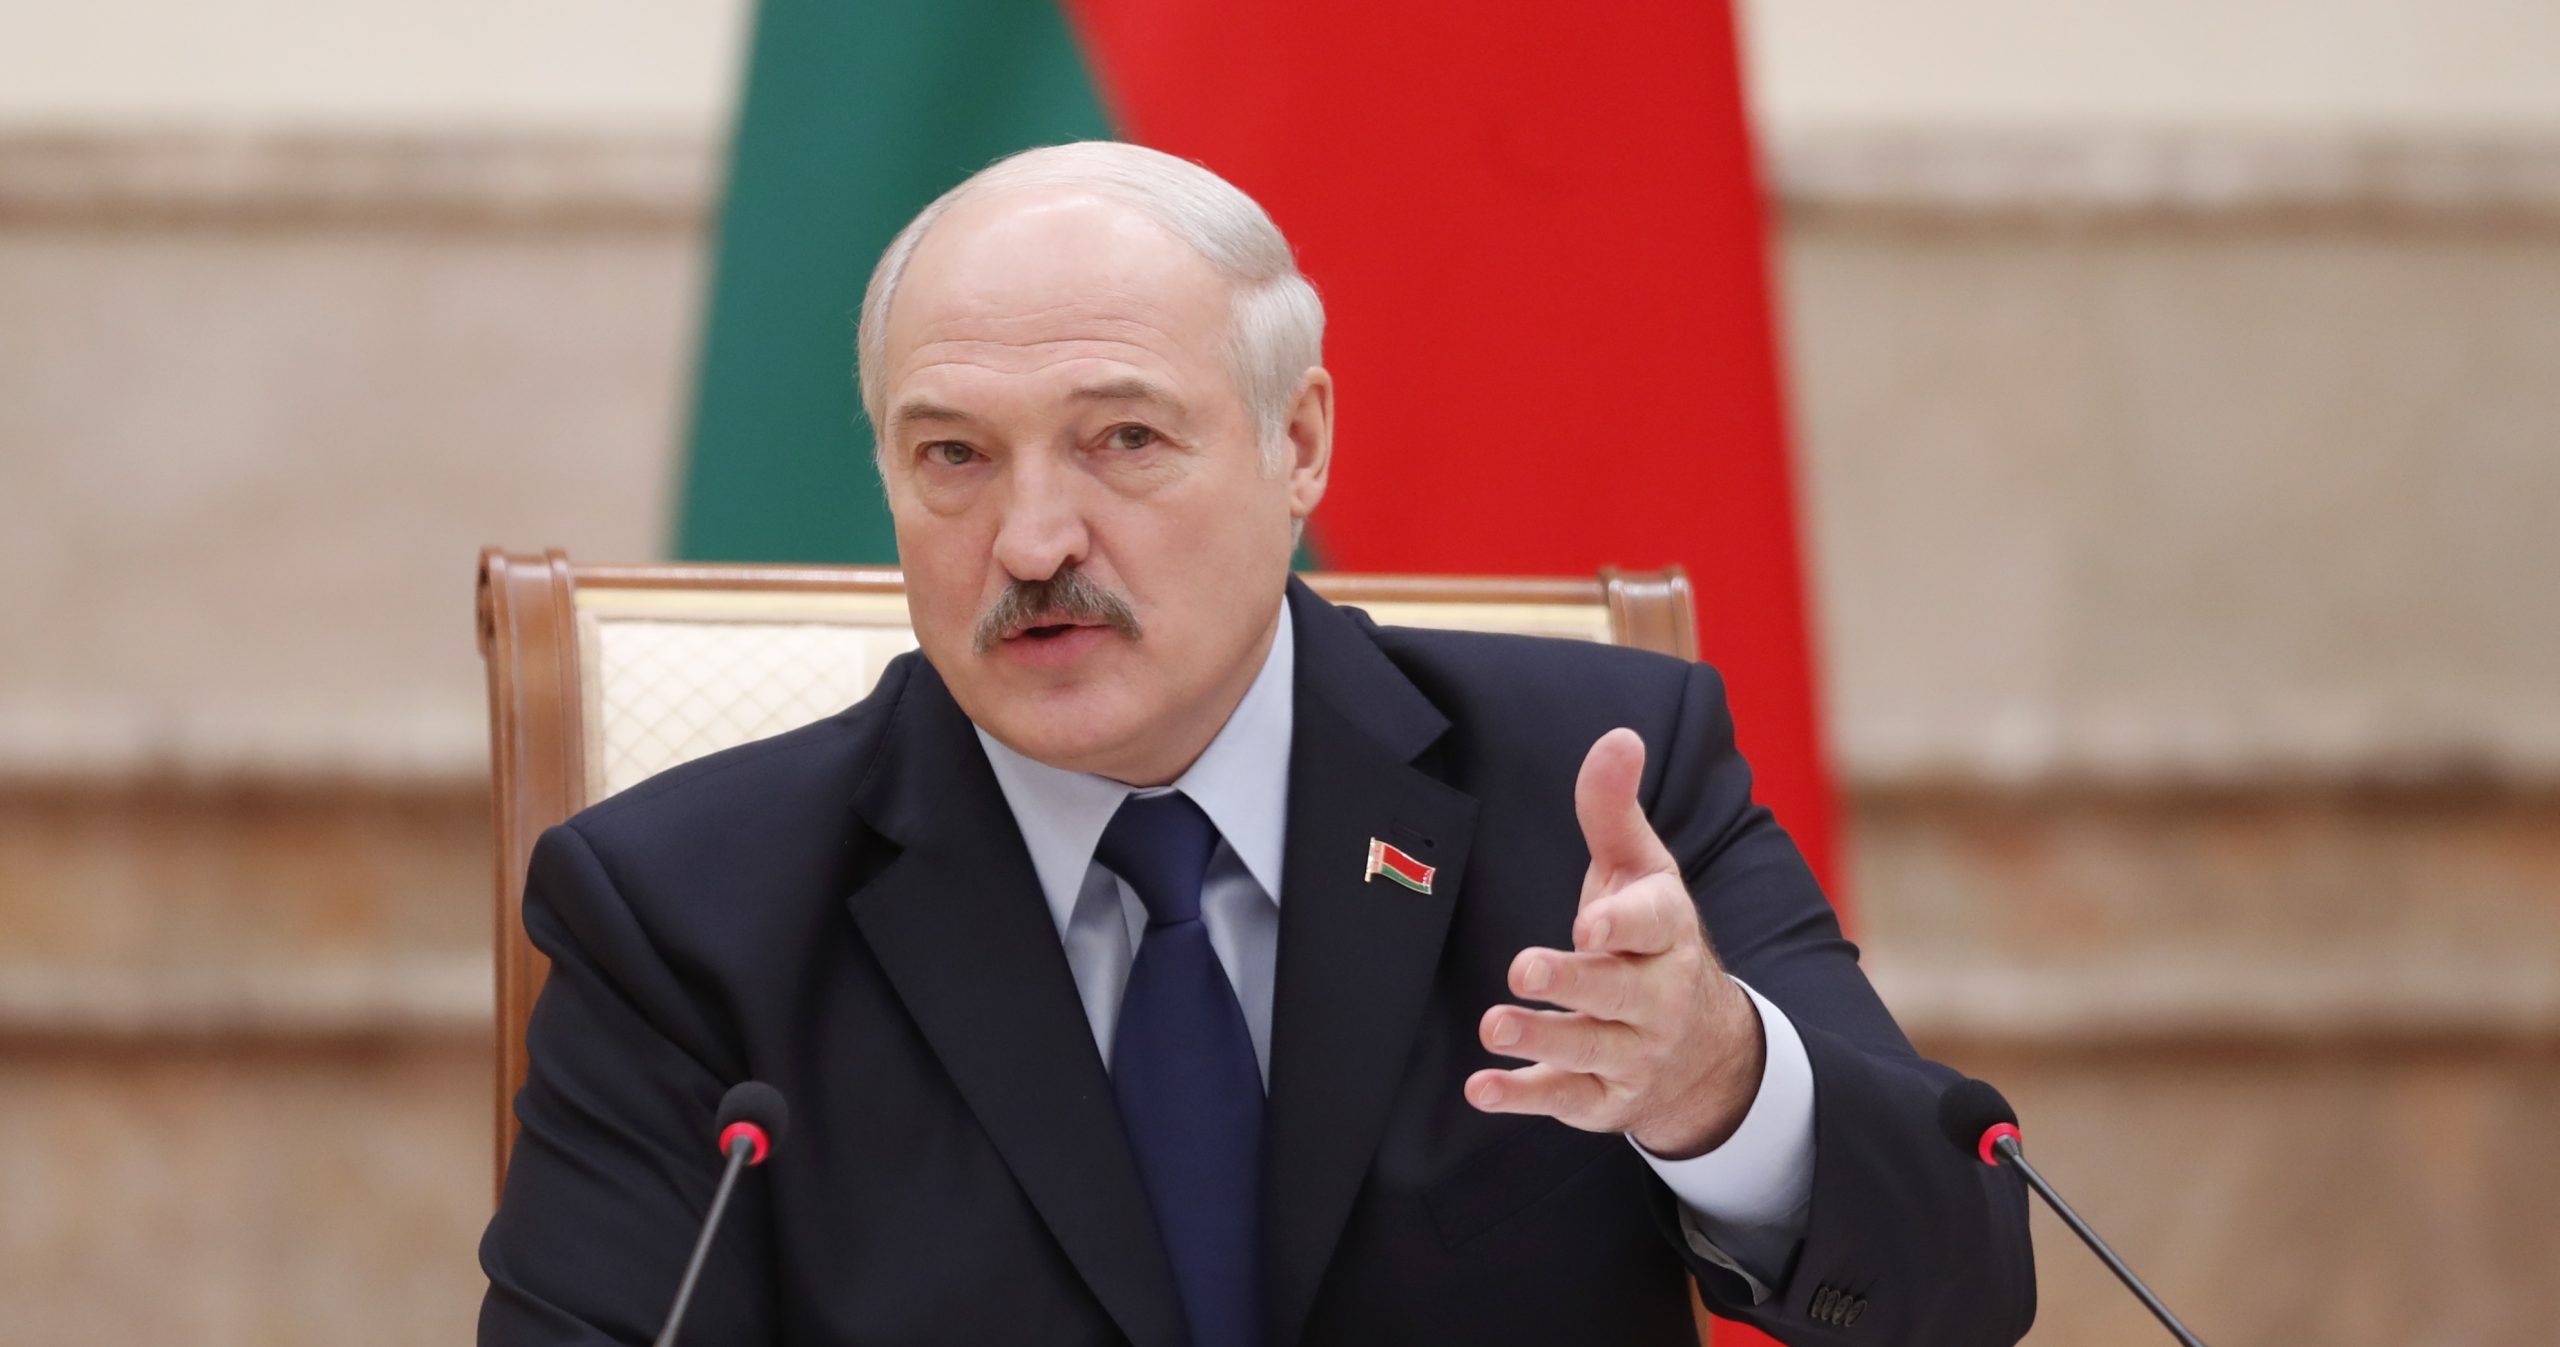 Λευκορωσία: Ζήτησε νομική συνδρομή από τις ΗΠΑ για την απόπειρα πραξικοπήματος